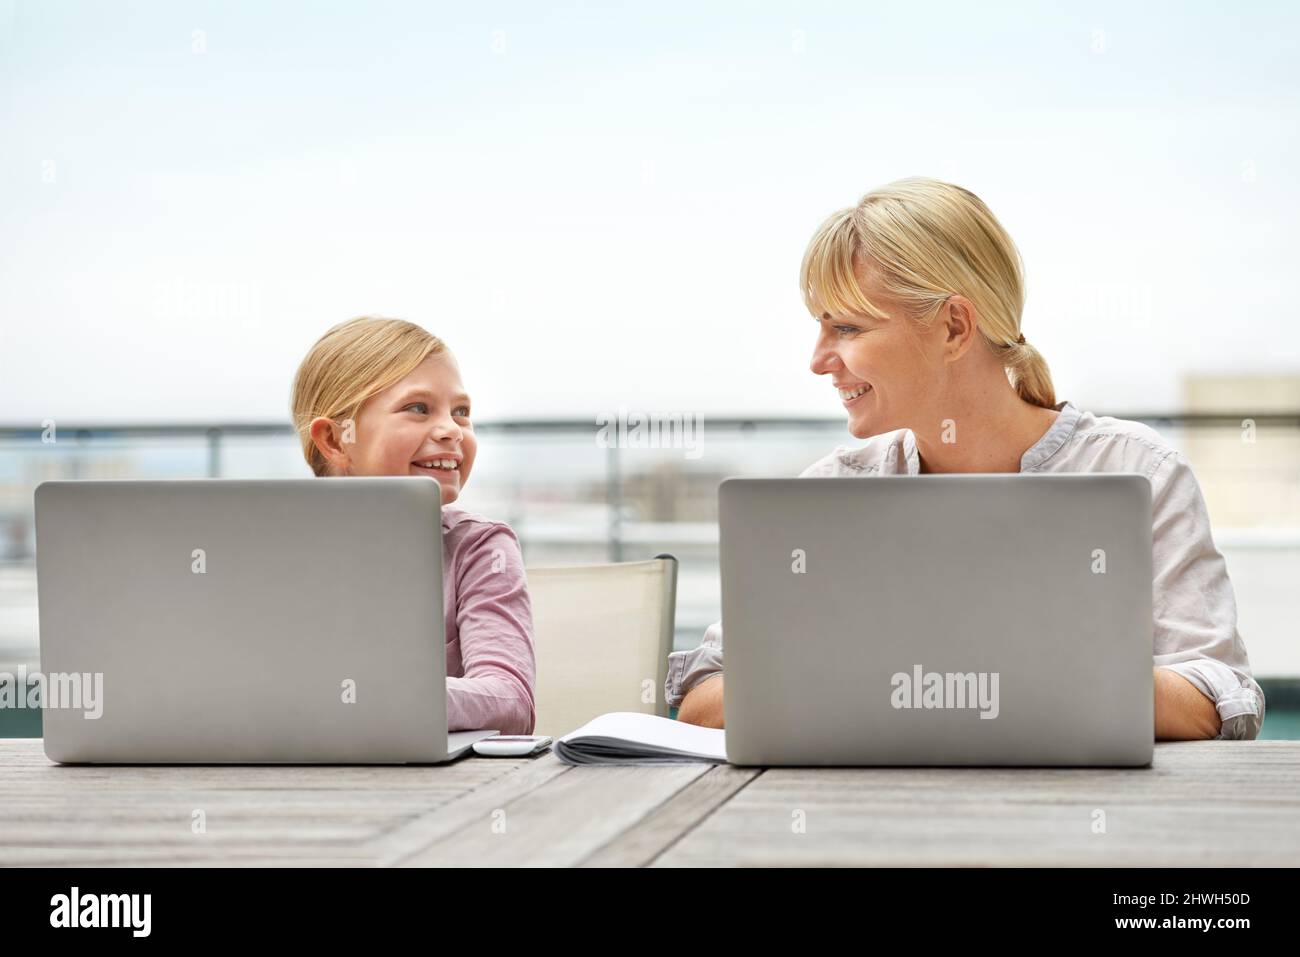 Proprio come sua mamma. Scatto di una ragazza e di sua madre usando i computer portatili fianco a fianco. Foto Stock